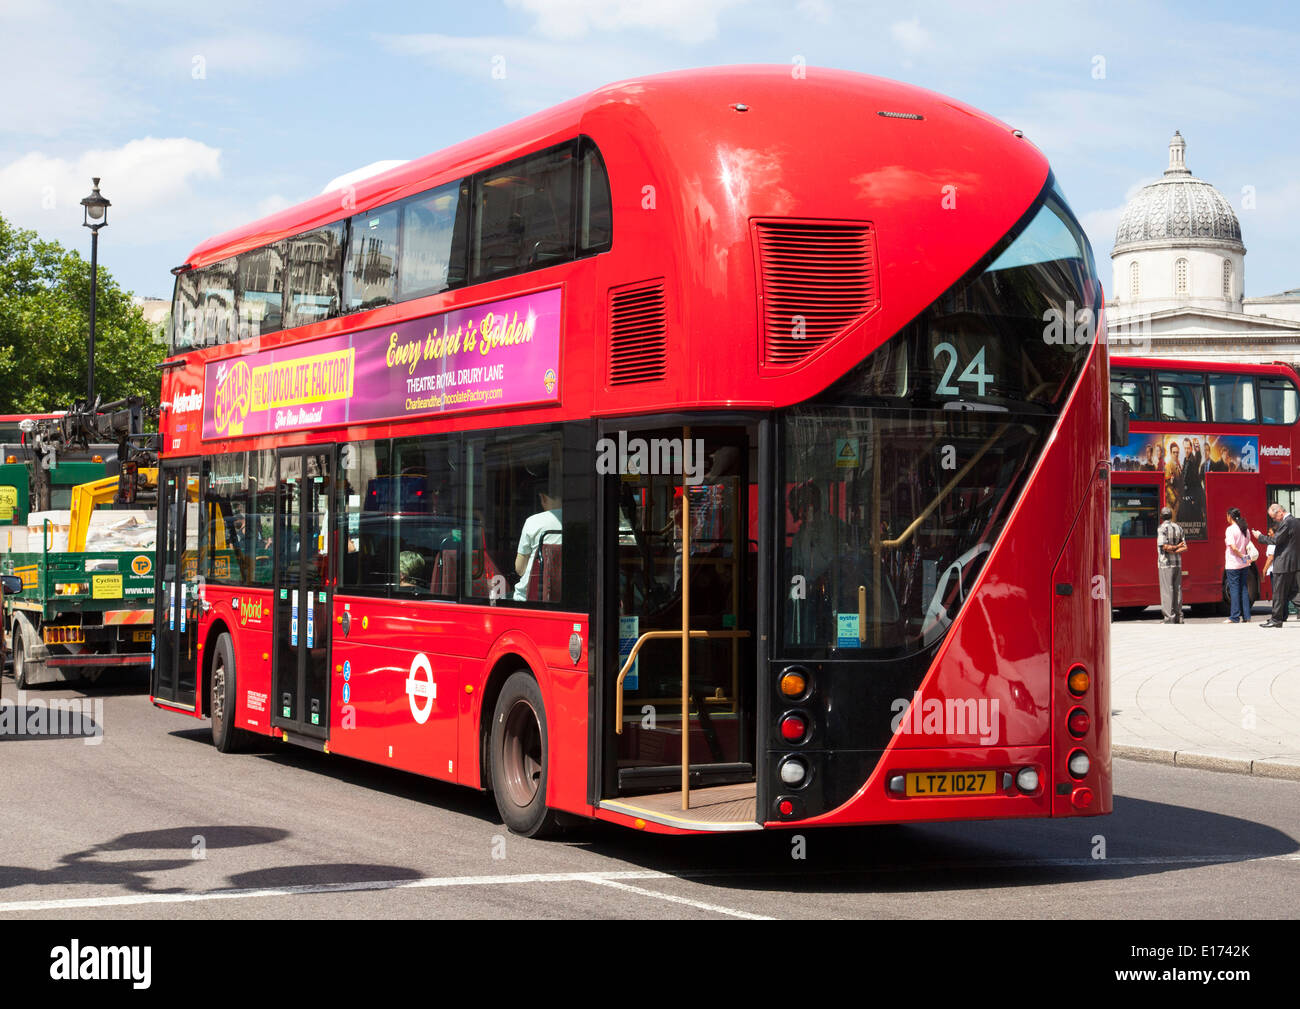 New bus for london fotografías e imágenes de alta resolución - Alamy